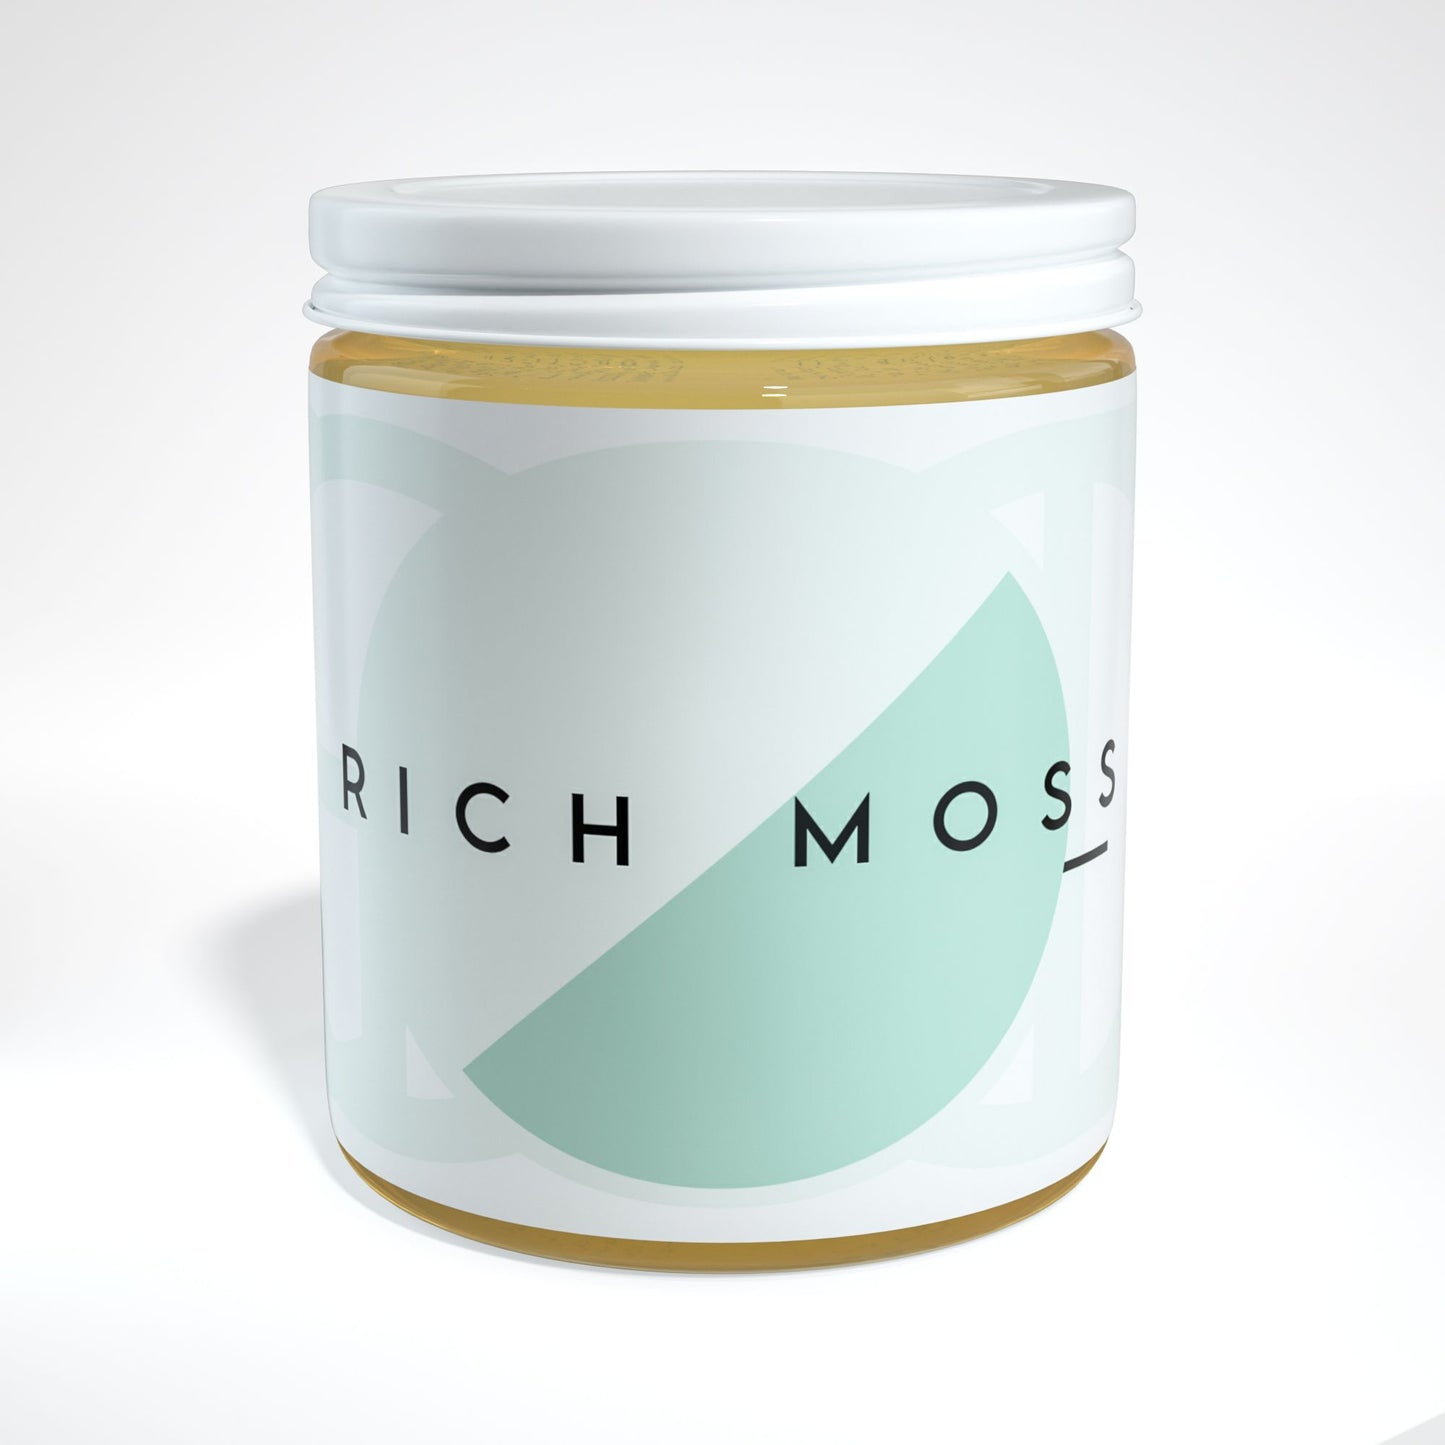 Rich Moss